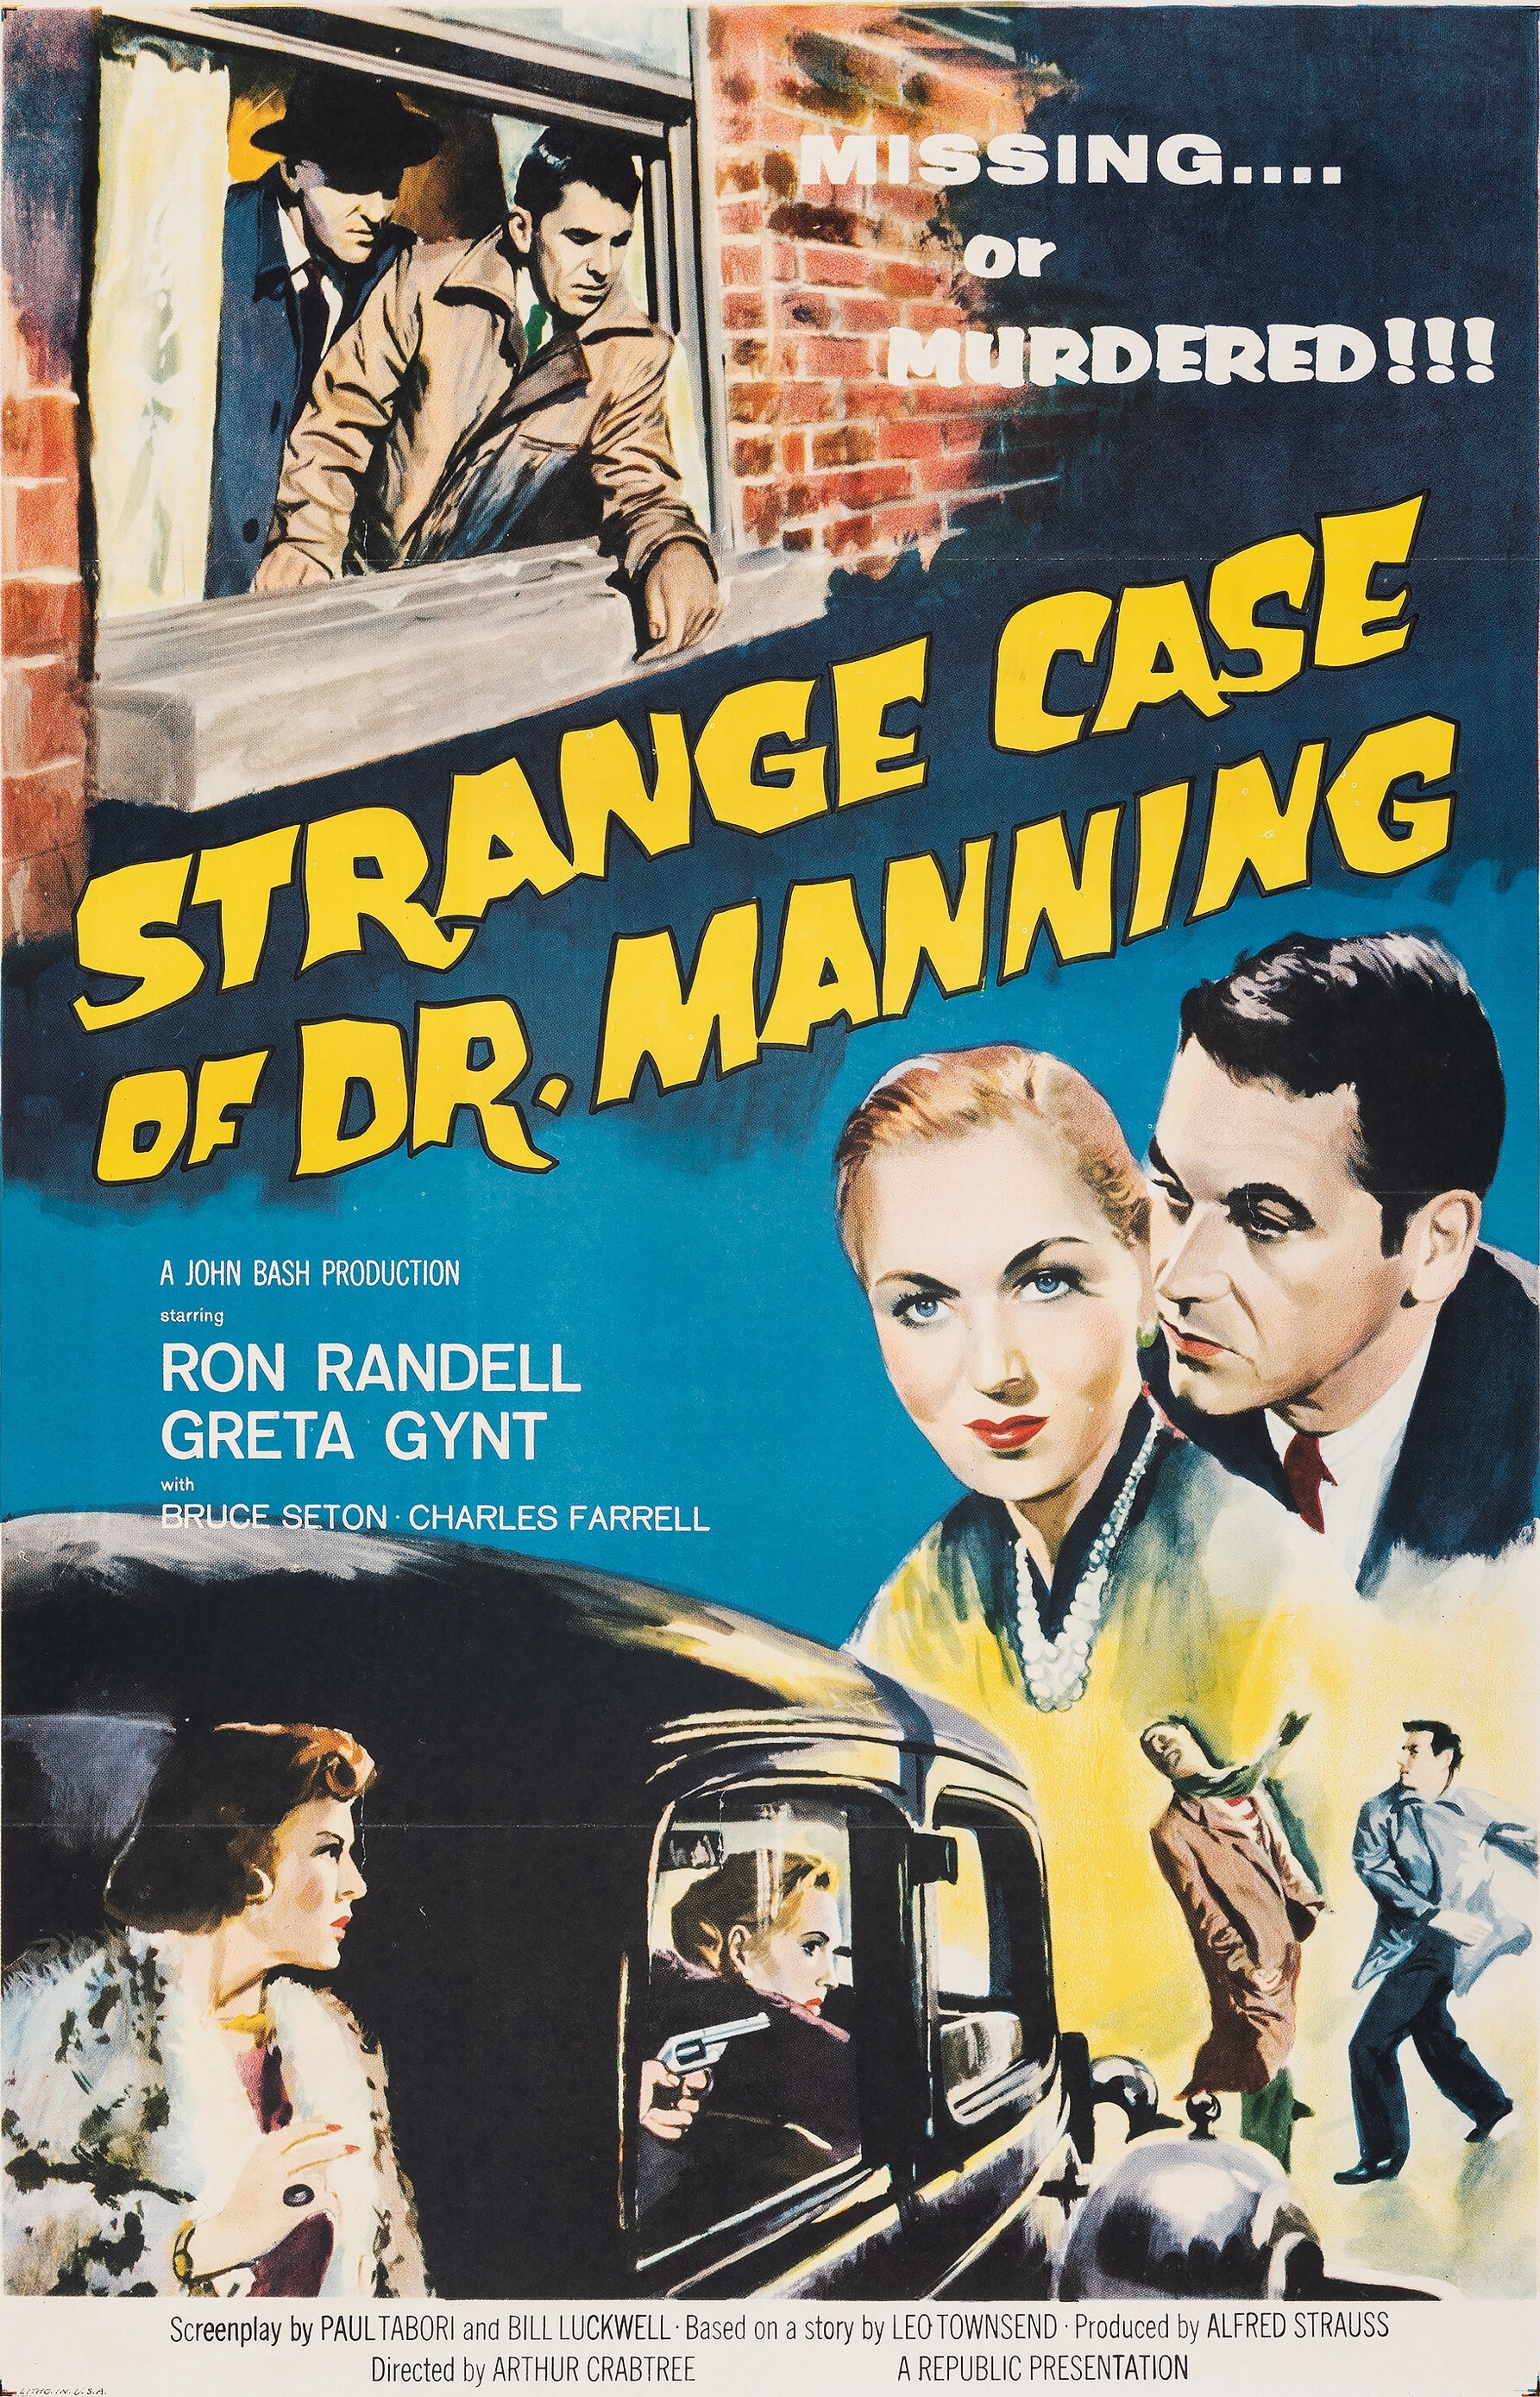 The Strange Case of Dr. Manning (1957) Screenshot 2 